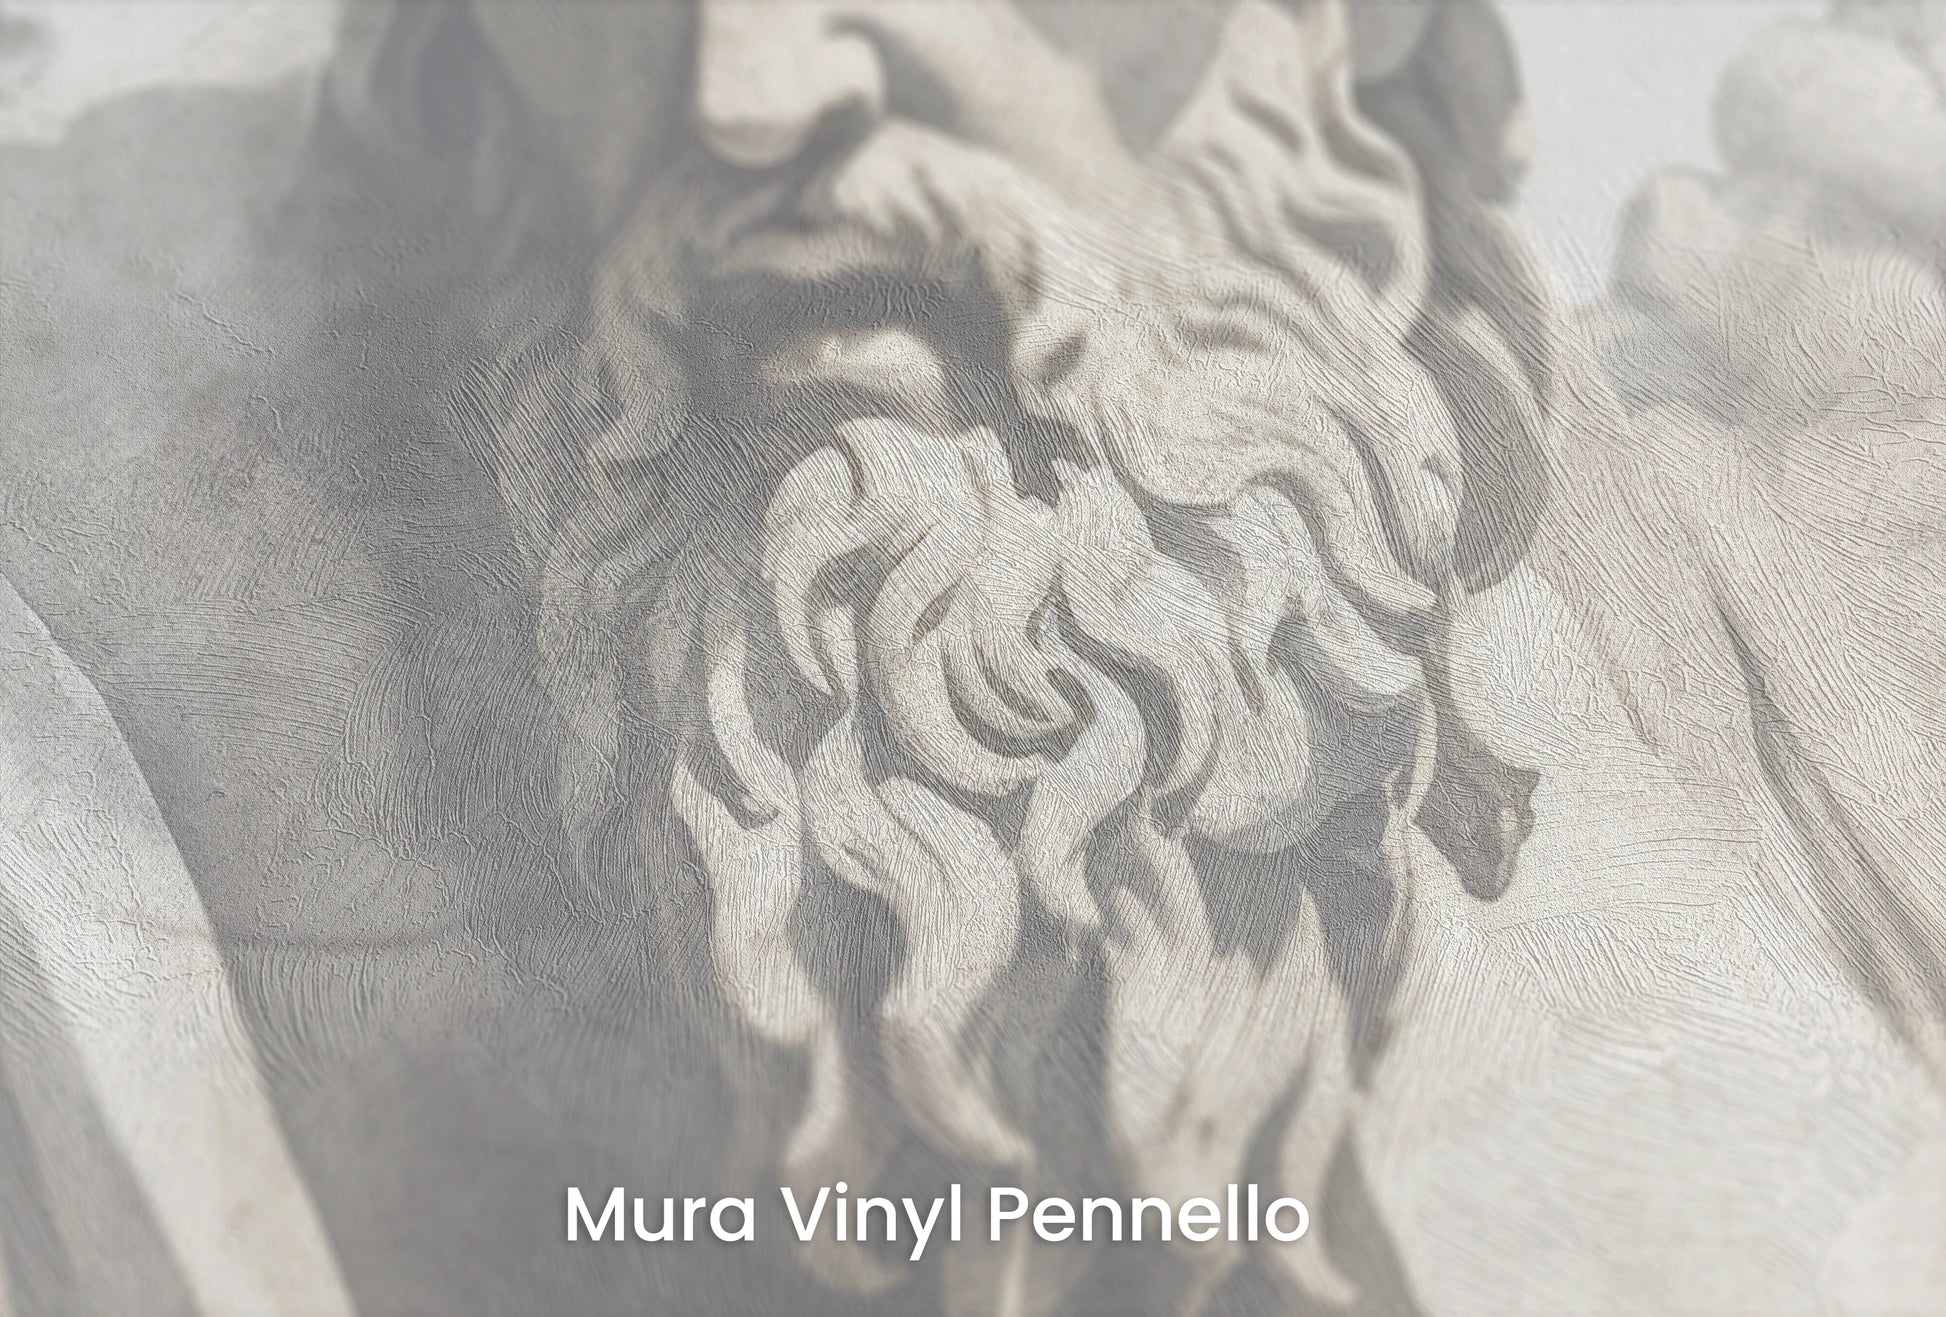 Zbliżenie na artystyczną fototapetę o nazwie Zeus's Contemplation na podłożu Mura Vinyl Pennello - faktura pociągnięć pędzla malarskiego.